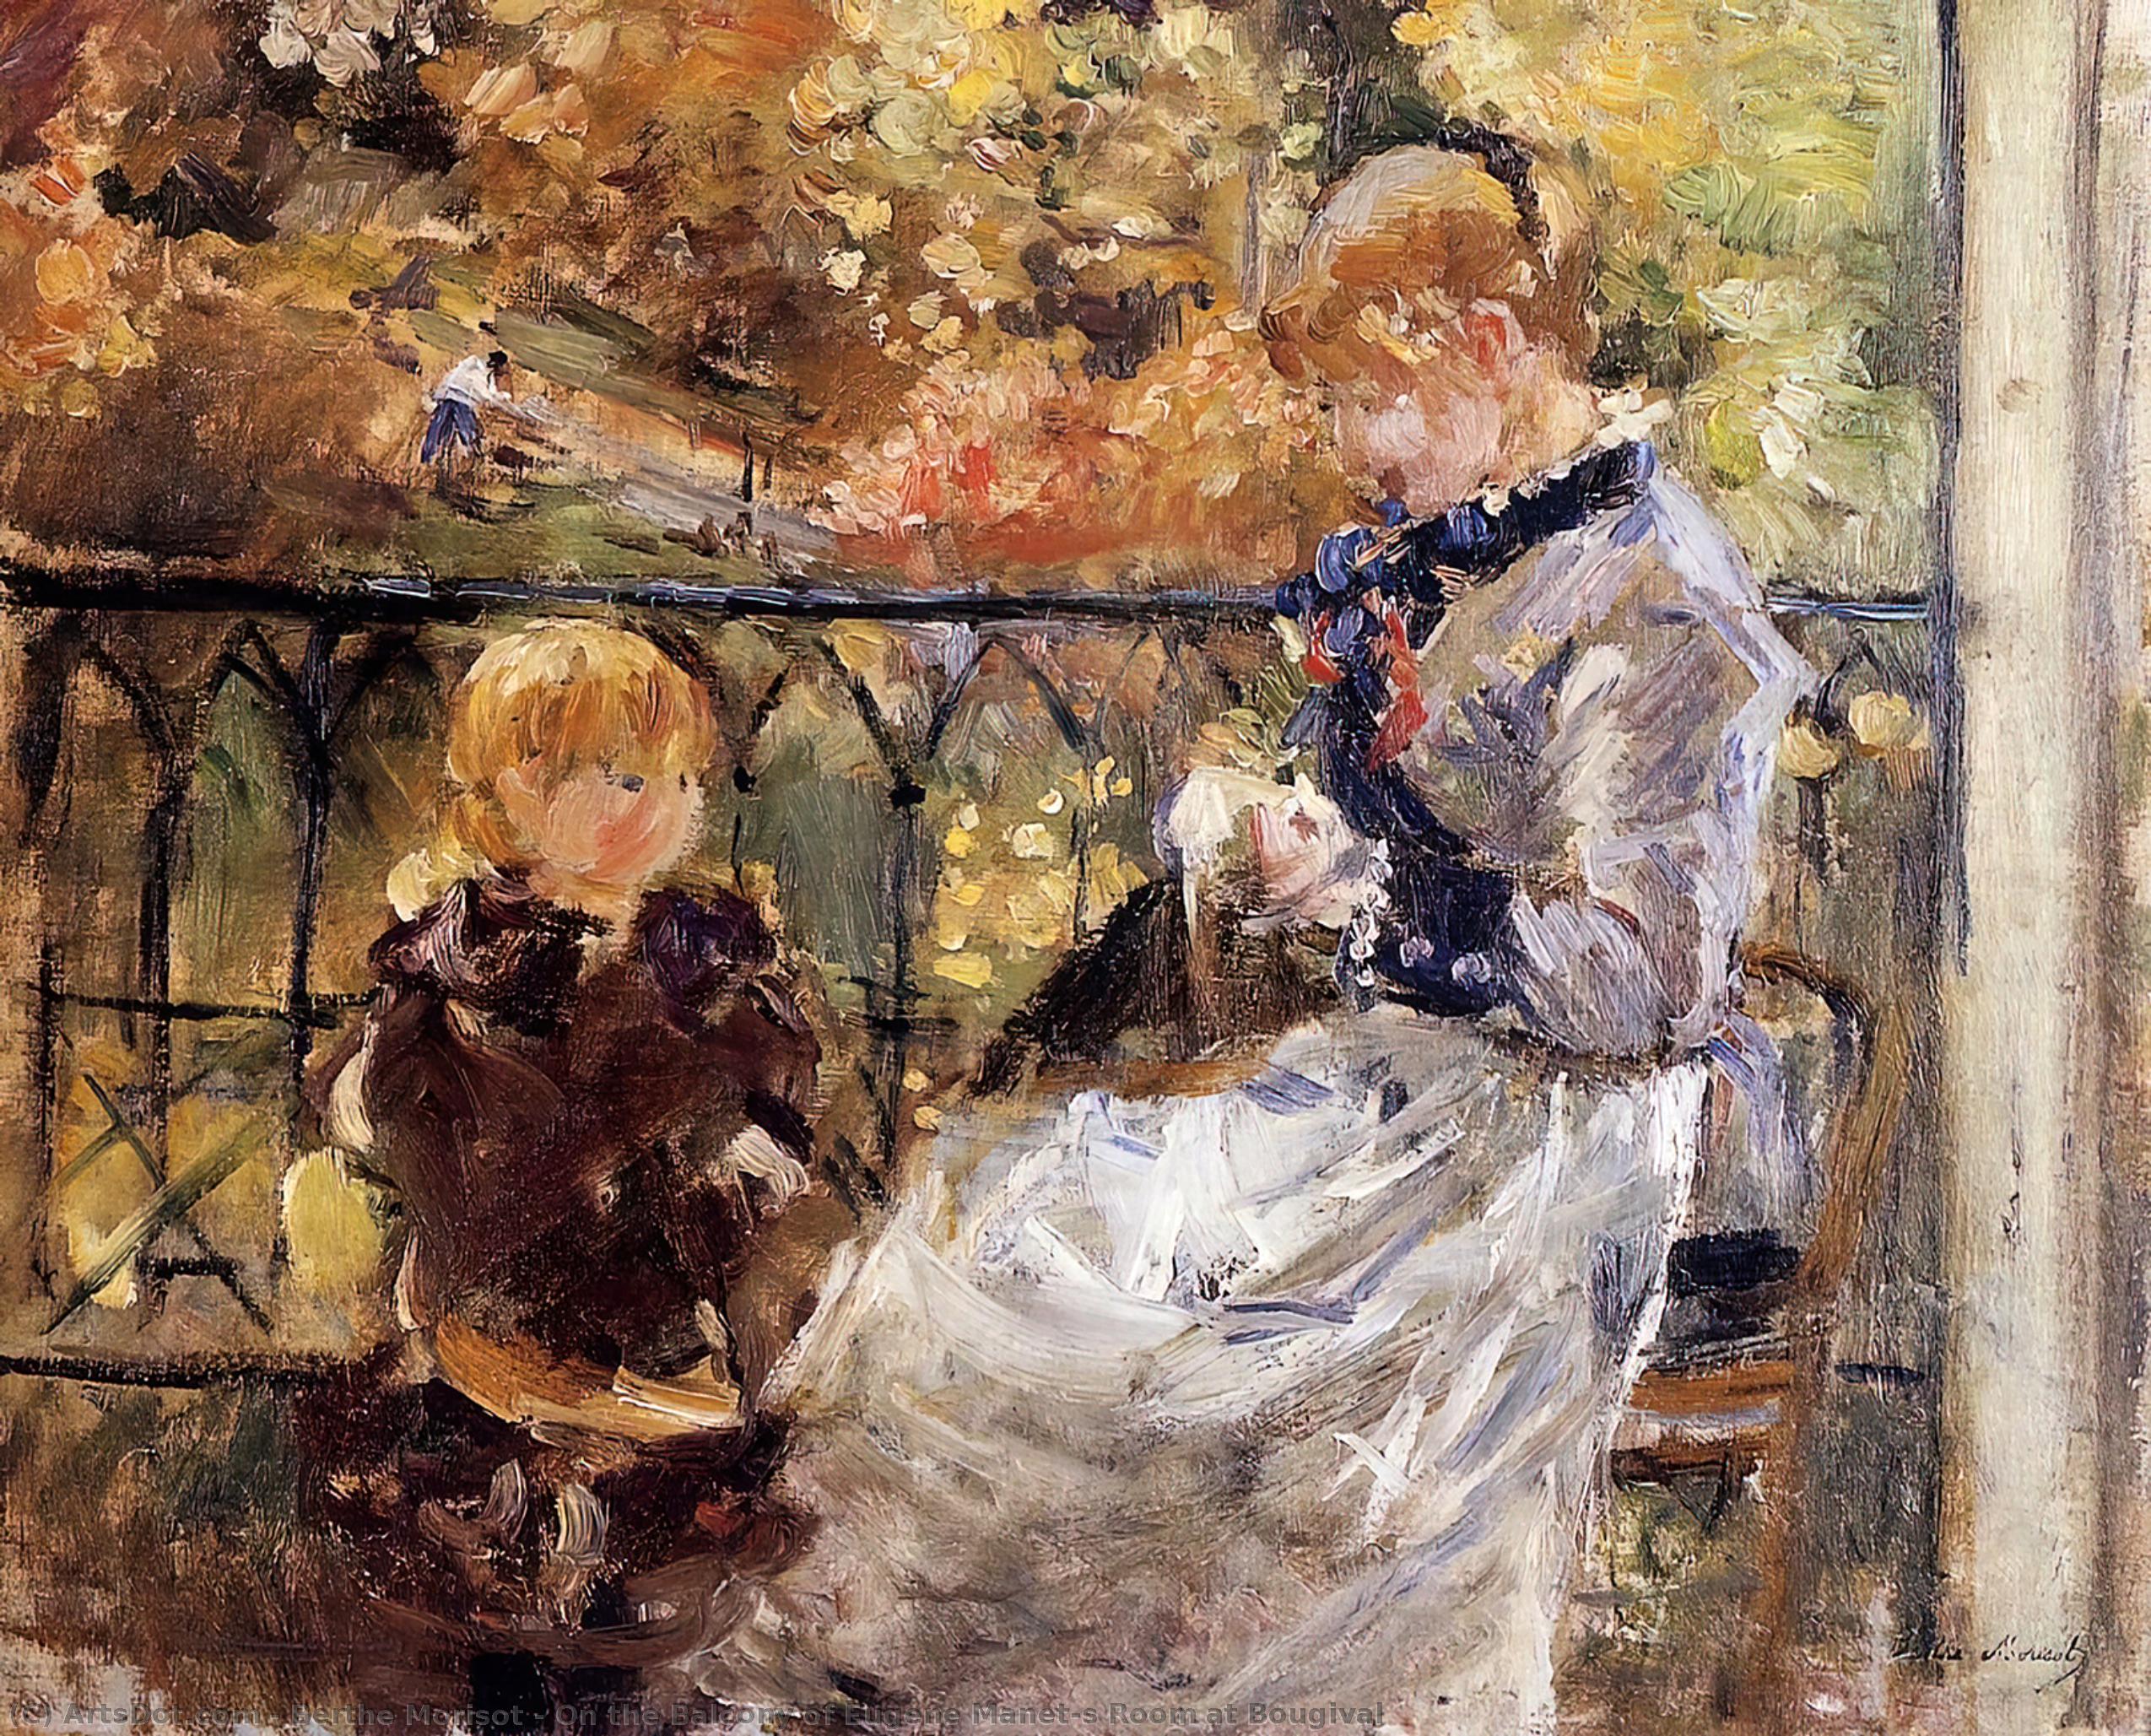 WikiOO.org - Enciclopédia das Belas Artes - Pintura, Arte por Berthe Morisot - On the Balcony of Eugene Manet's Room at Bougival